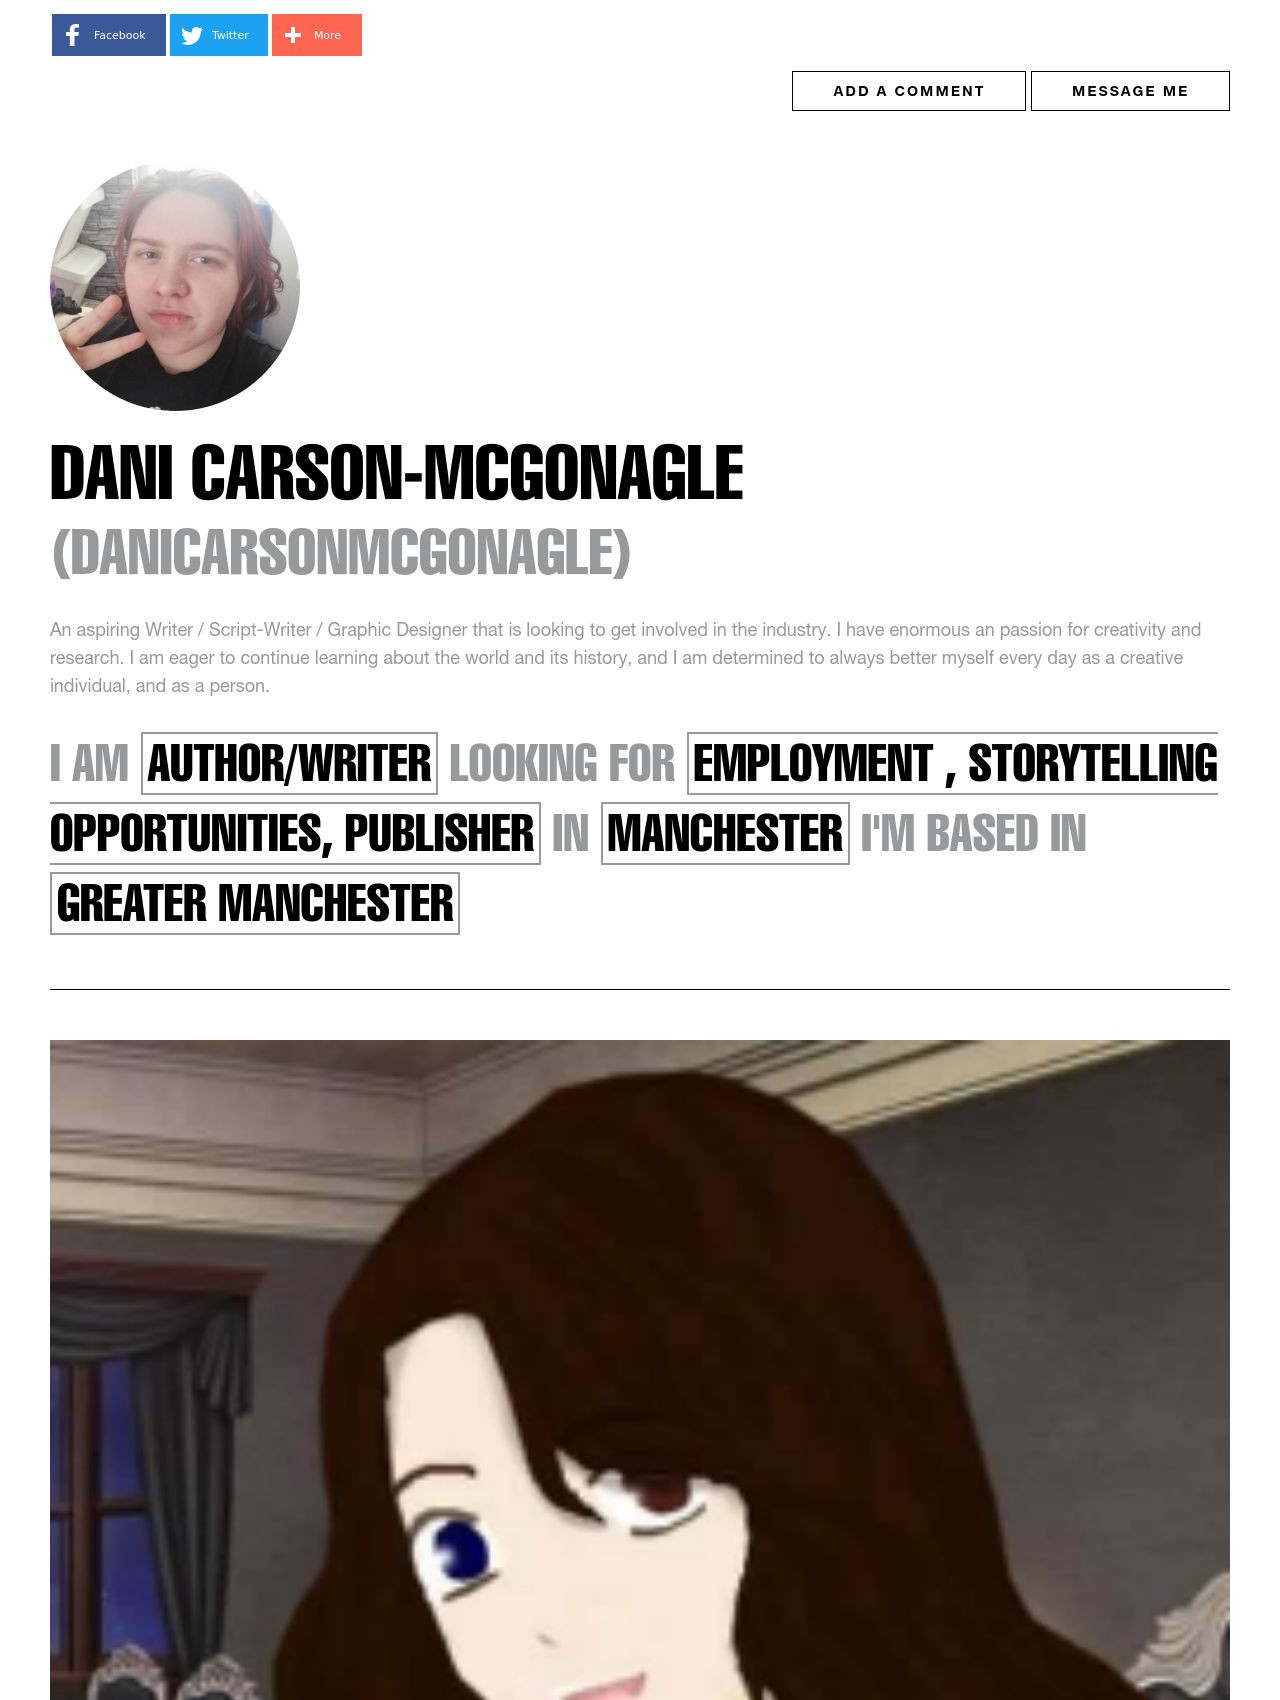 Dani Carson-McGonagle